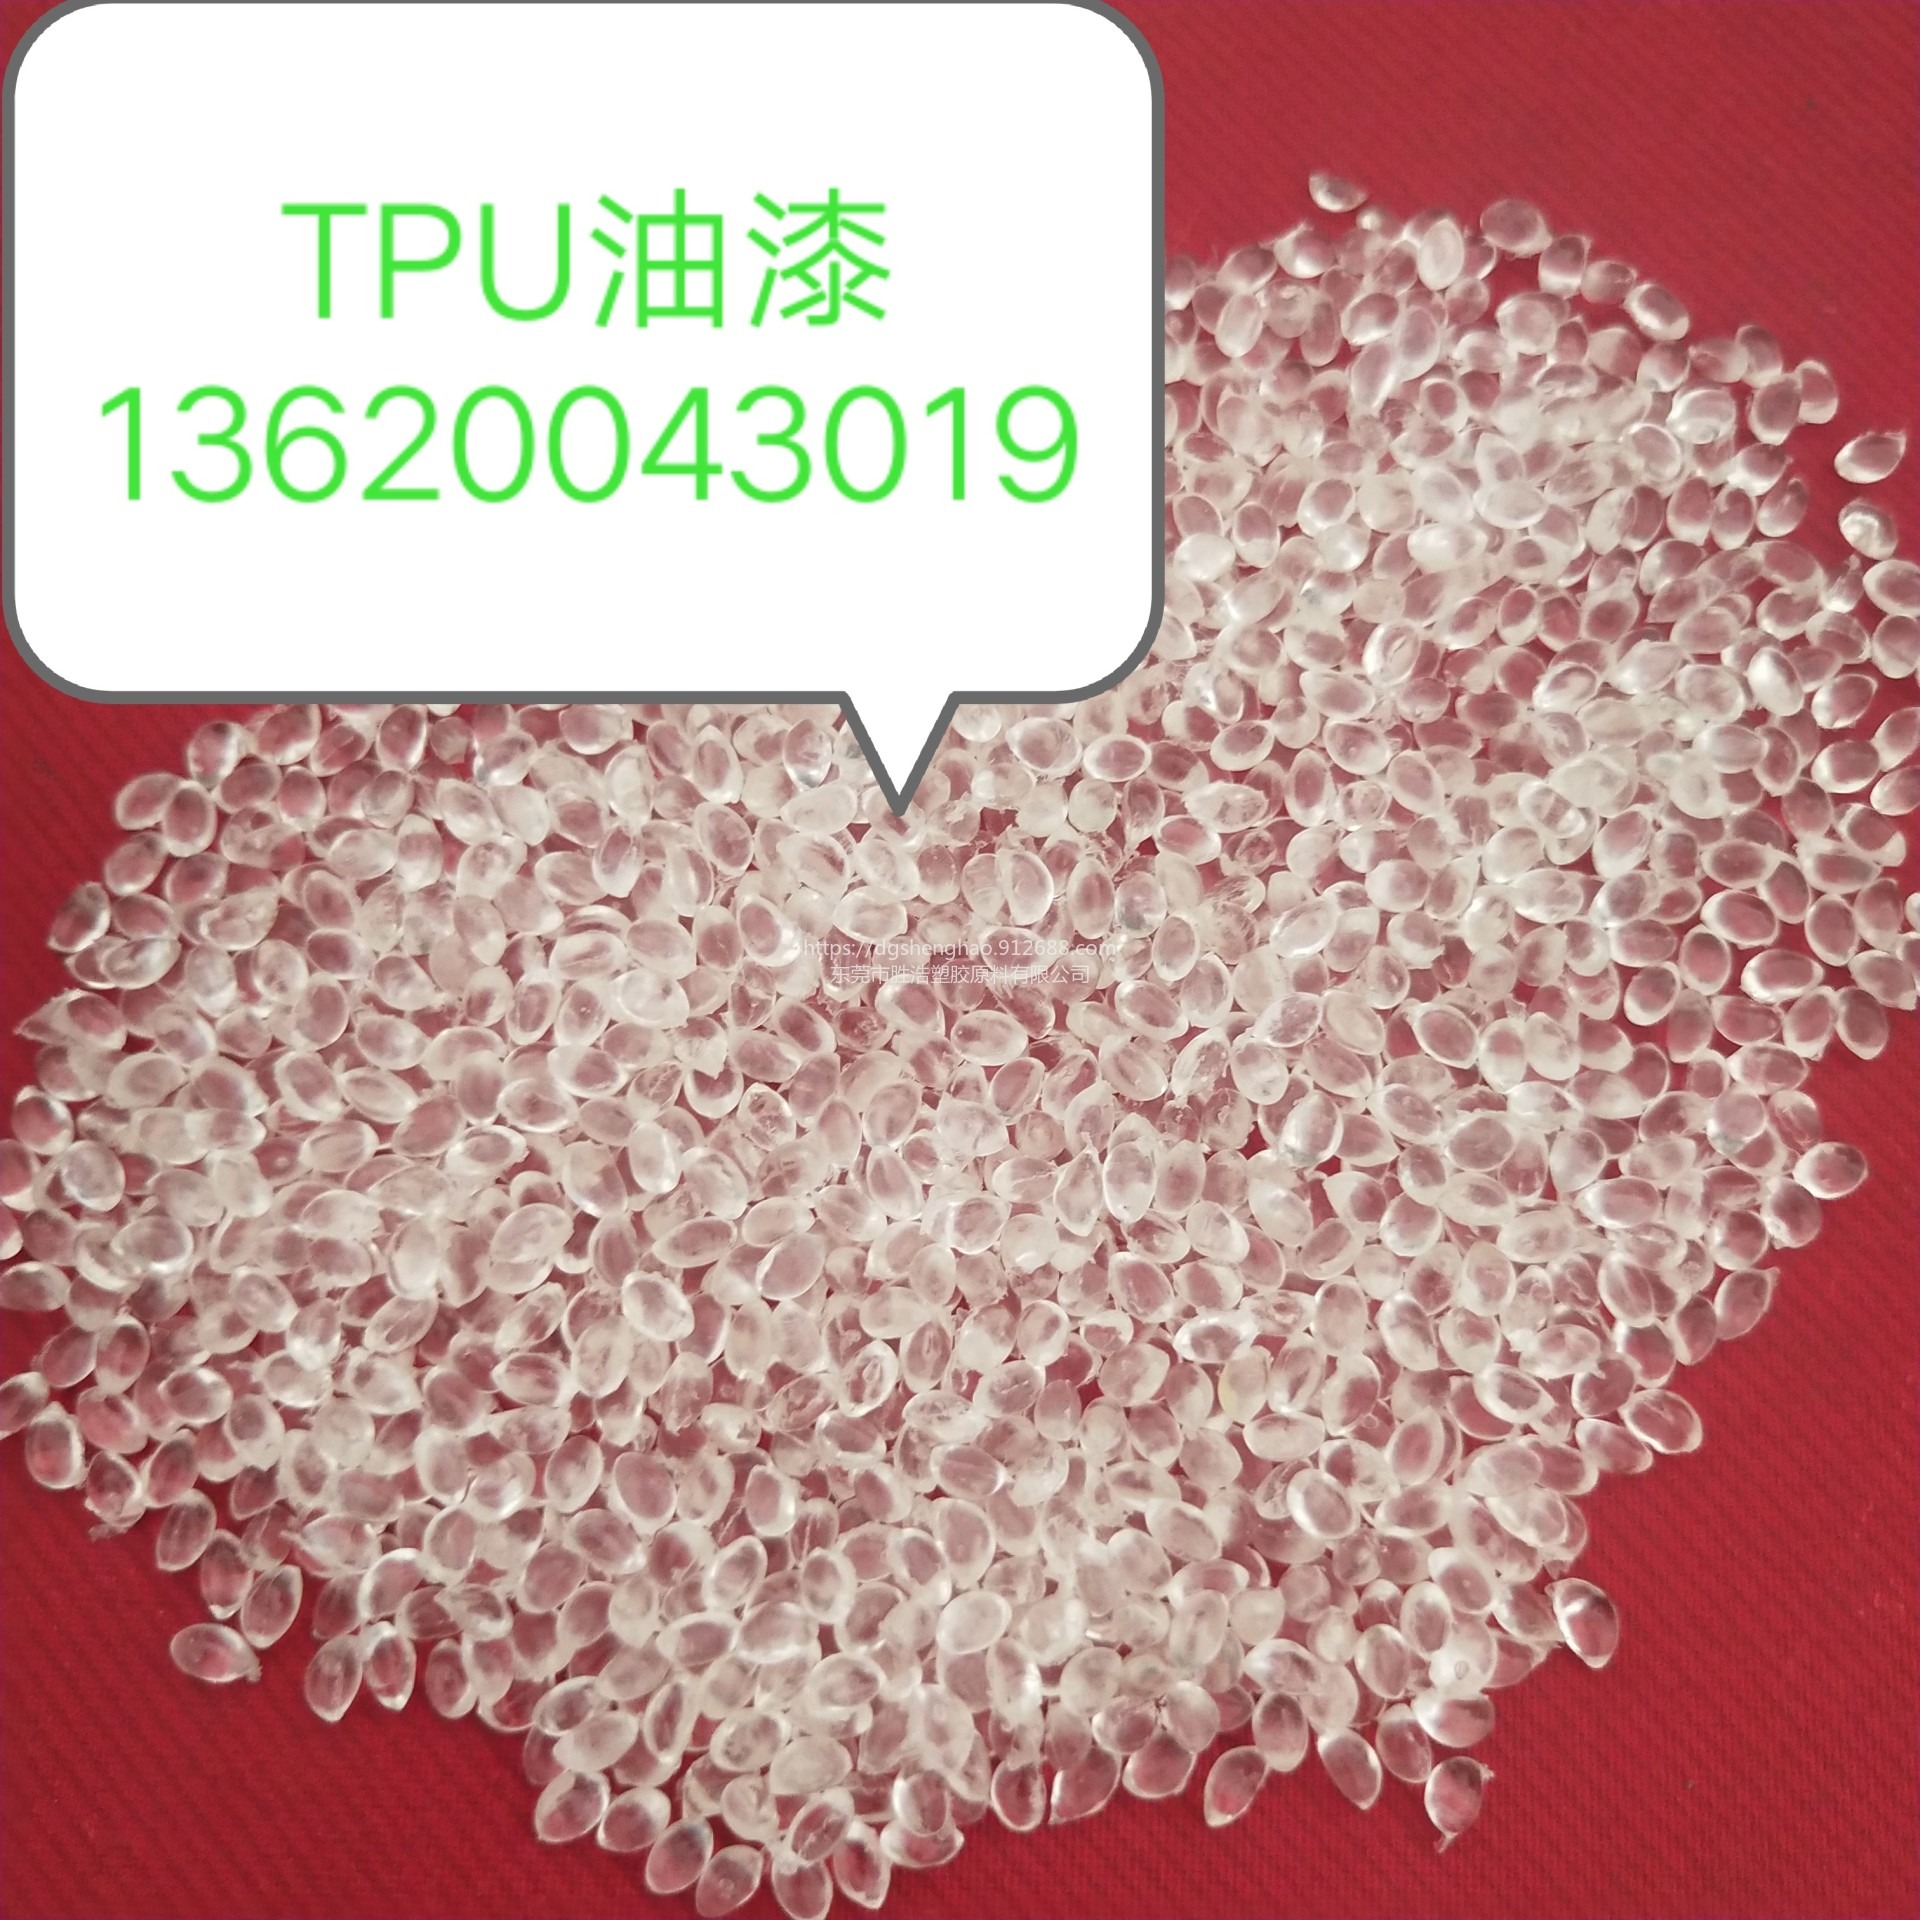 油墨TPU  高透明油墨  高光泽  溶剂型TPU  甲苯可溶TPU  醇类可溶TPU 酯类可溶TPU